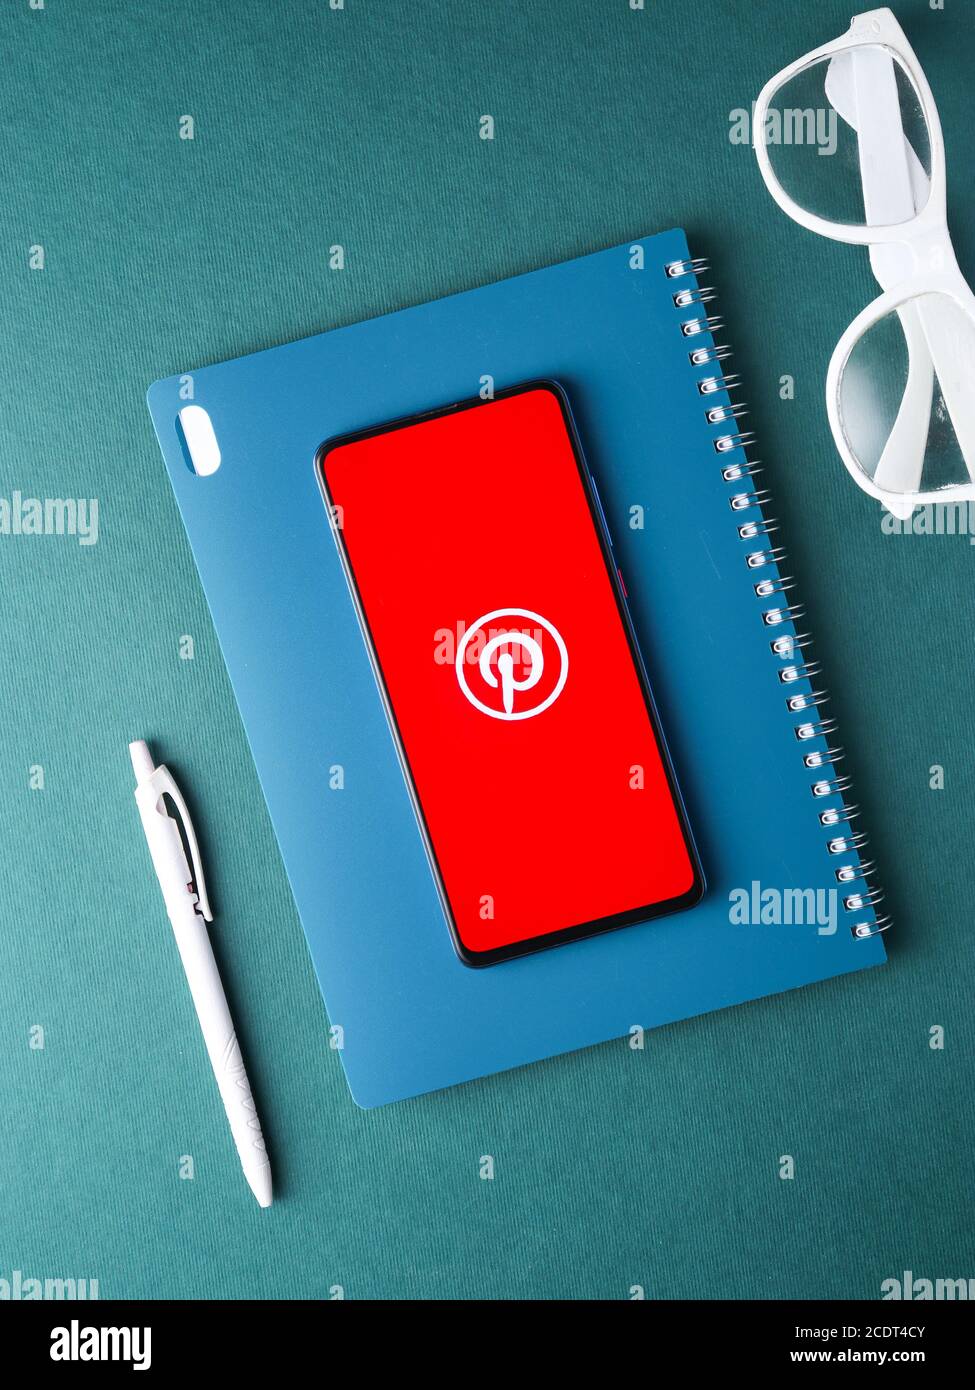 Assam, inde - 22 août 2020 : logo Pinterest sur l'écran du téléphone. Banque D'Images